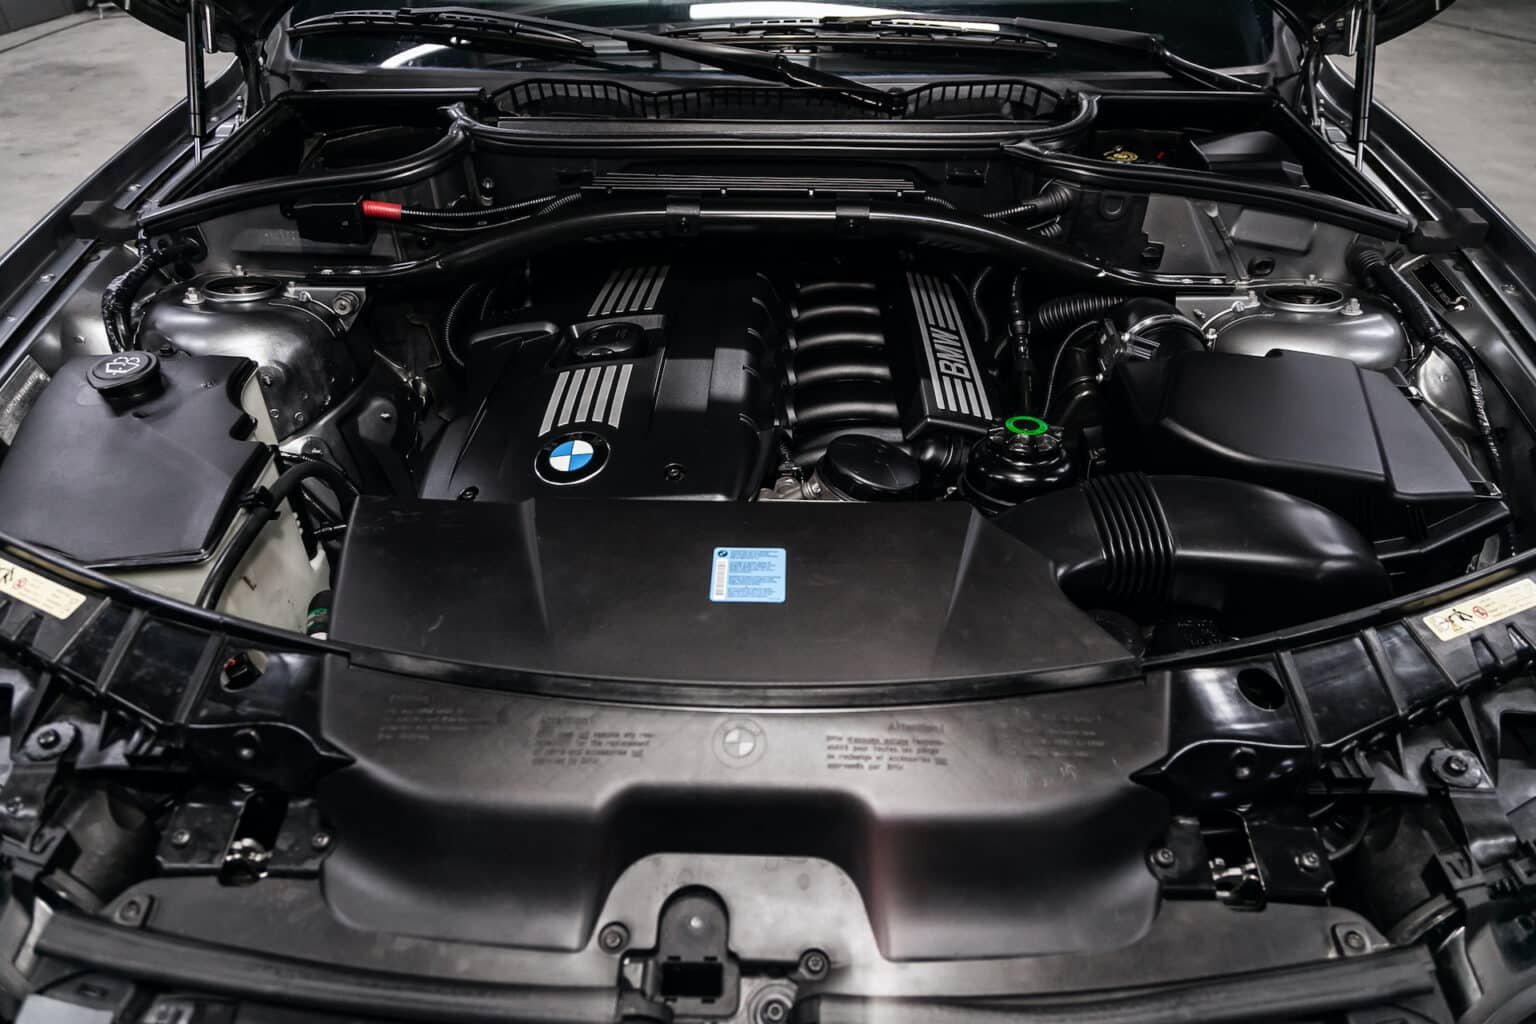 BMW-Mercedes-Verbrenner-Motor